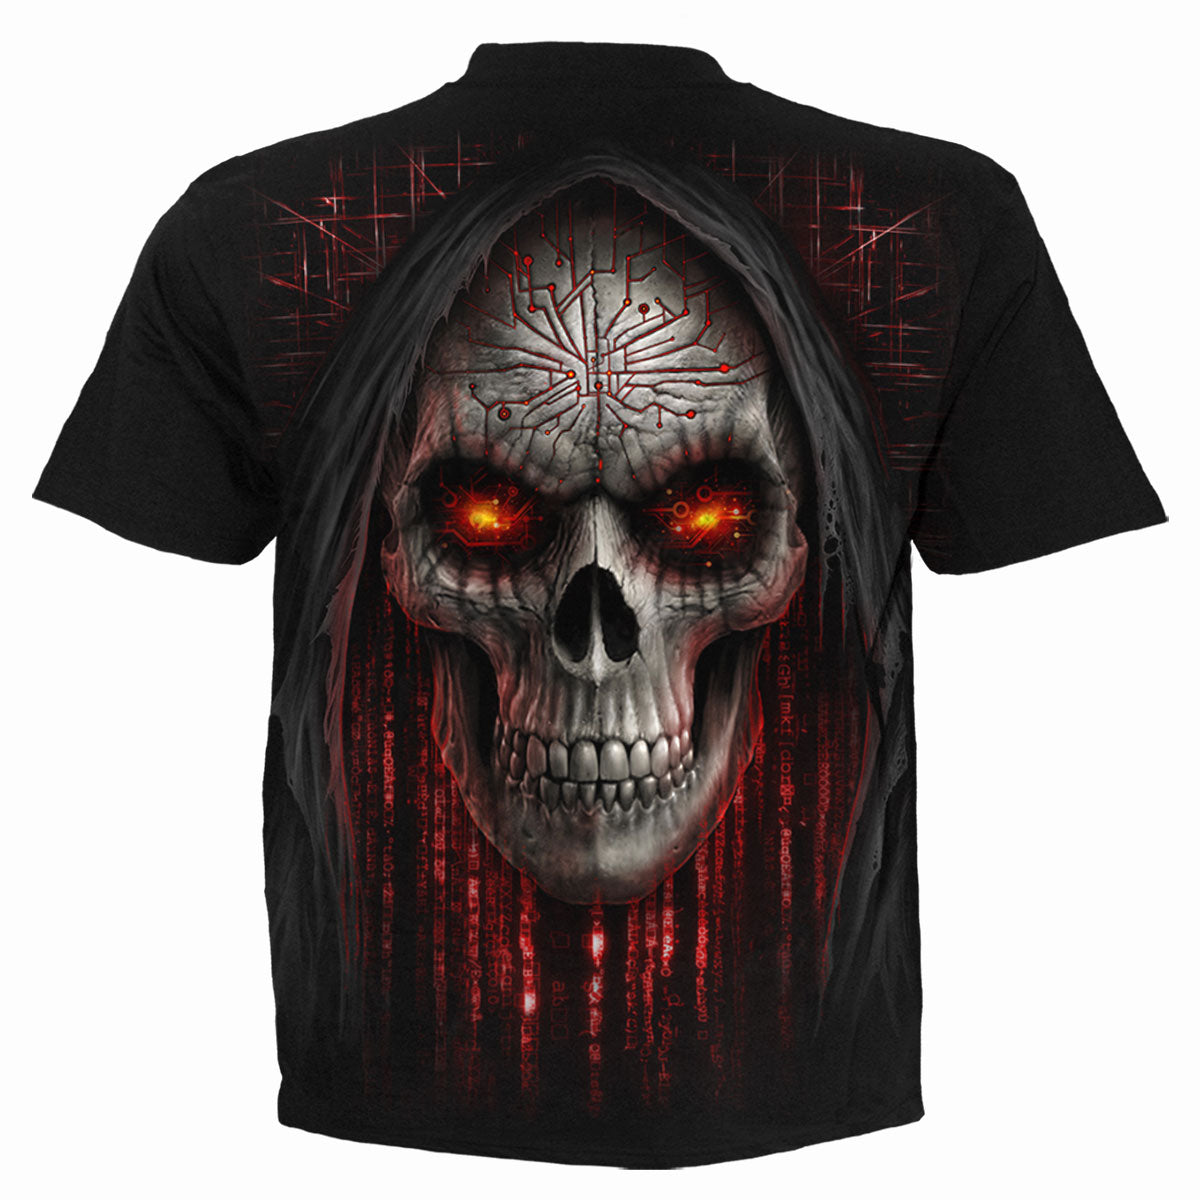 CYBER DEATH - Kinder T-Shirt Schwarz